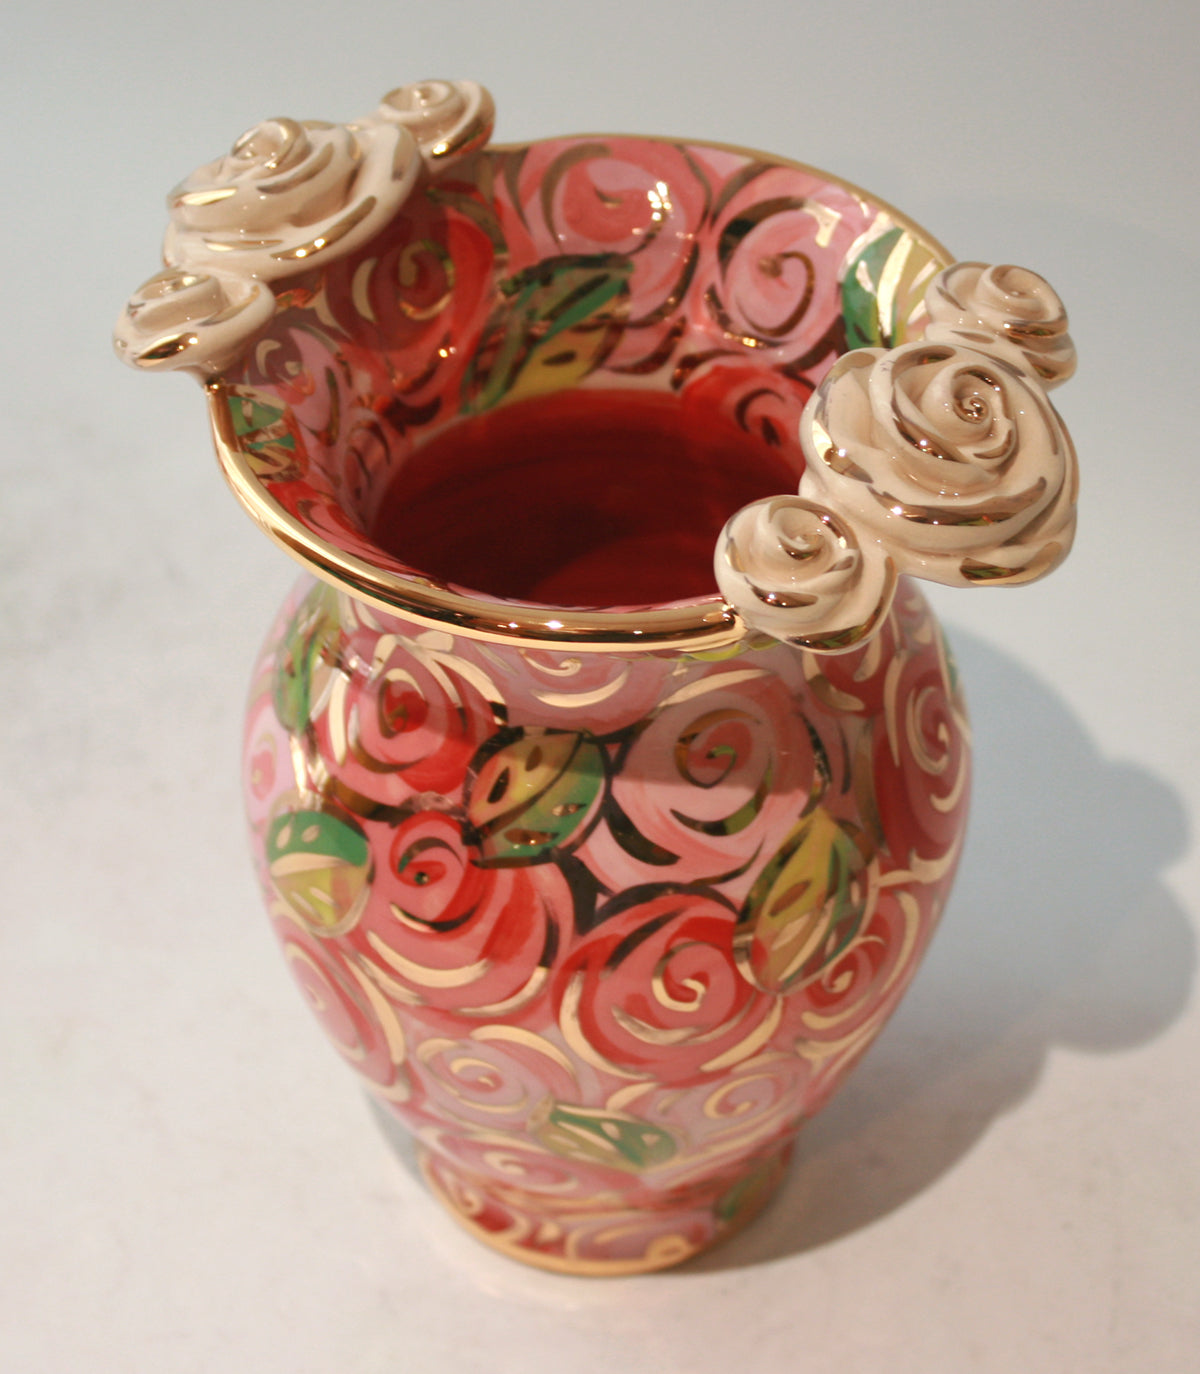 Small Fat Vase in Pink Rosebush